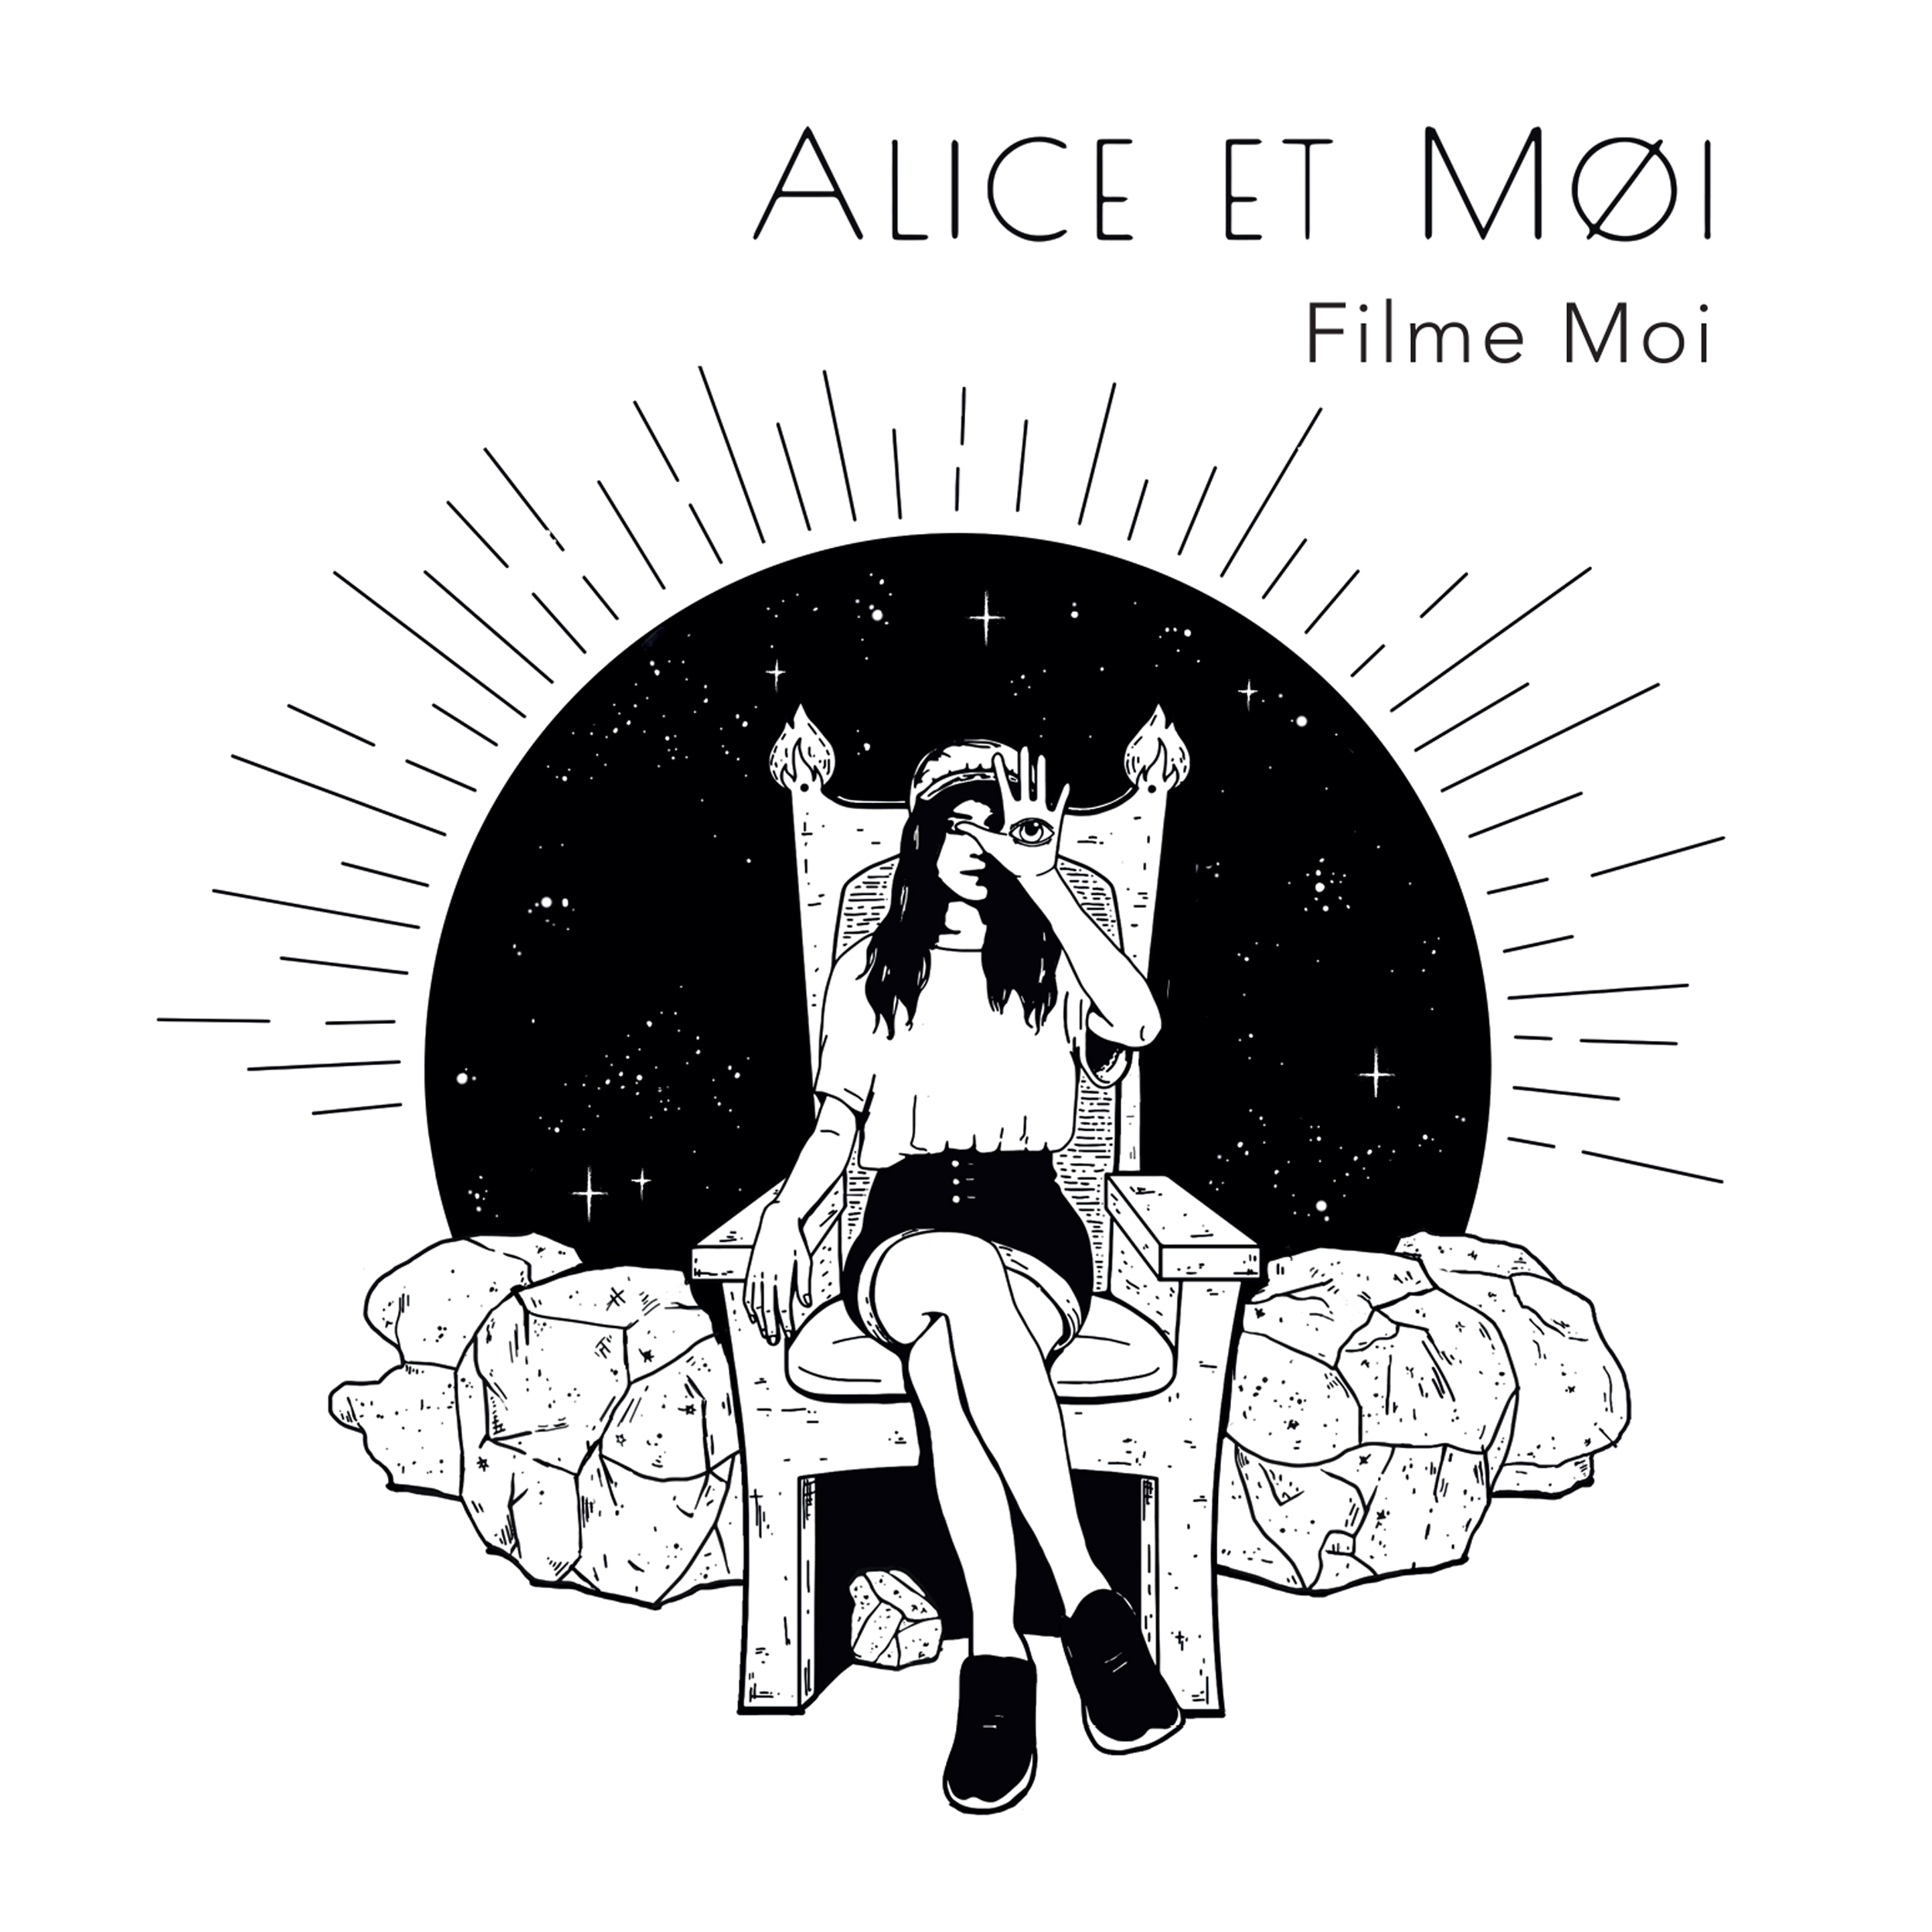 Alice & Moi